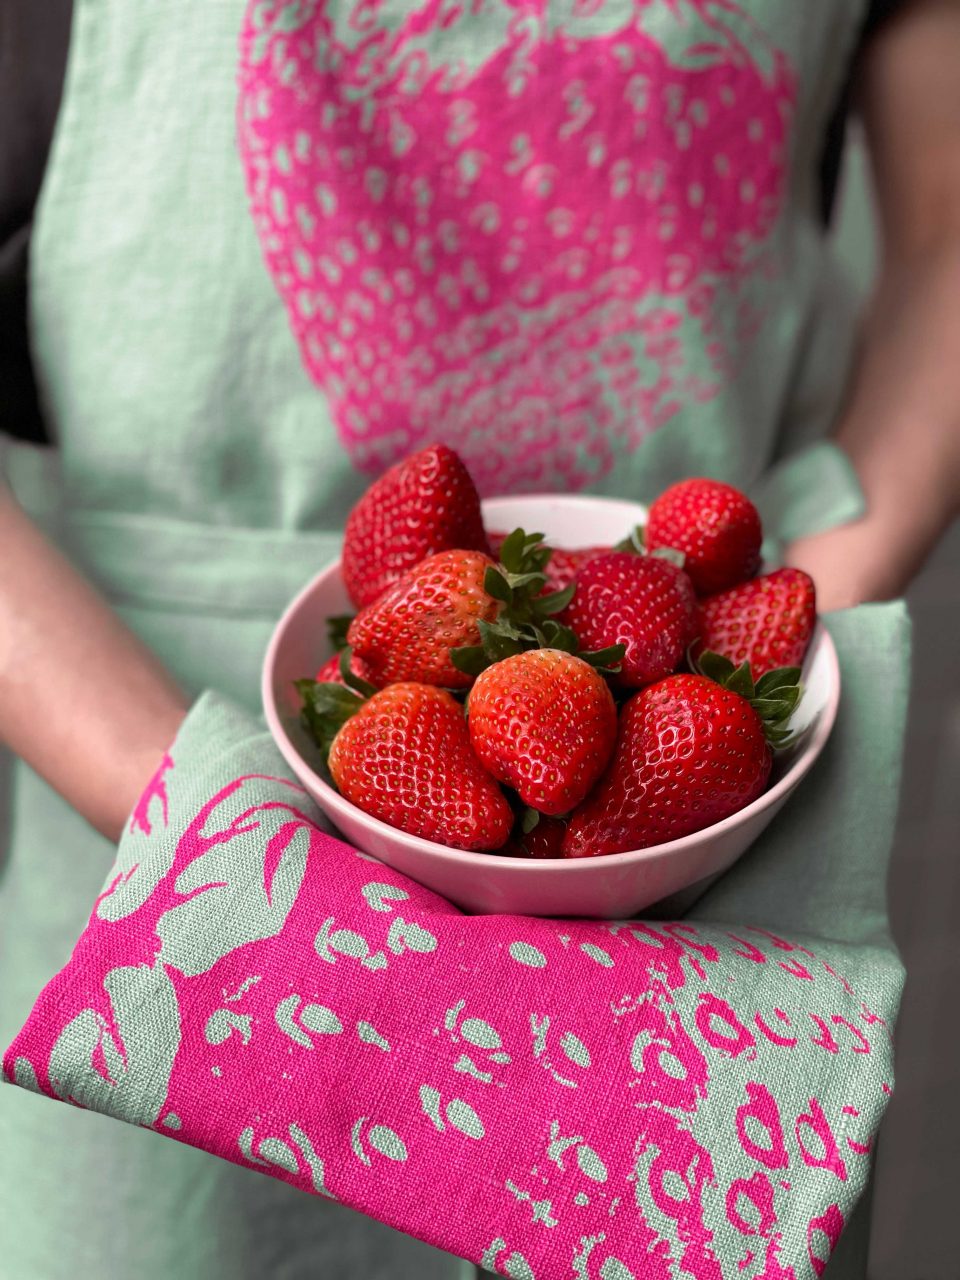 Zur Saison<br />
frische Erdbeeren<br />
